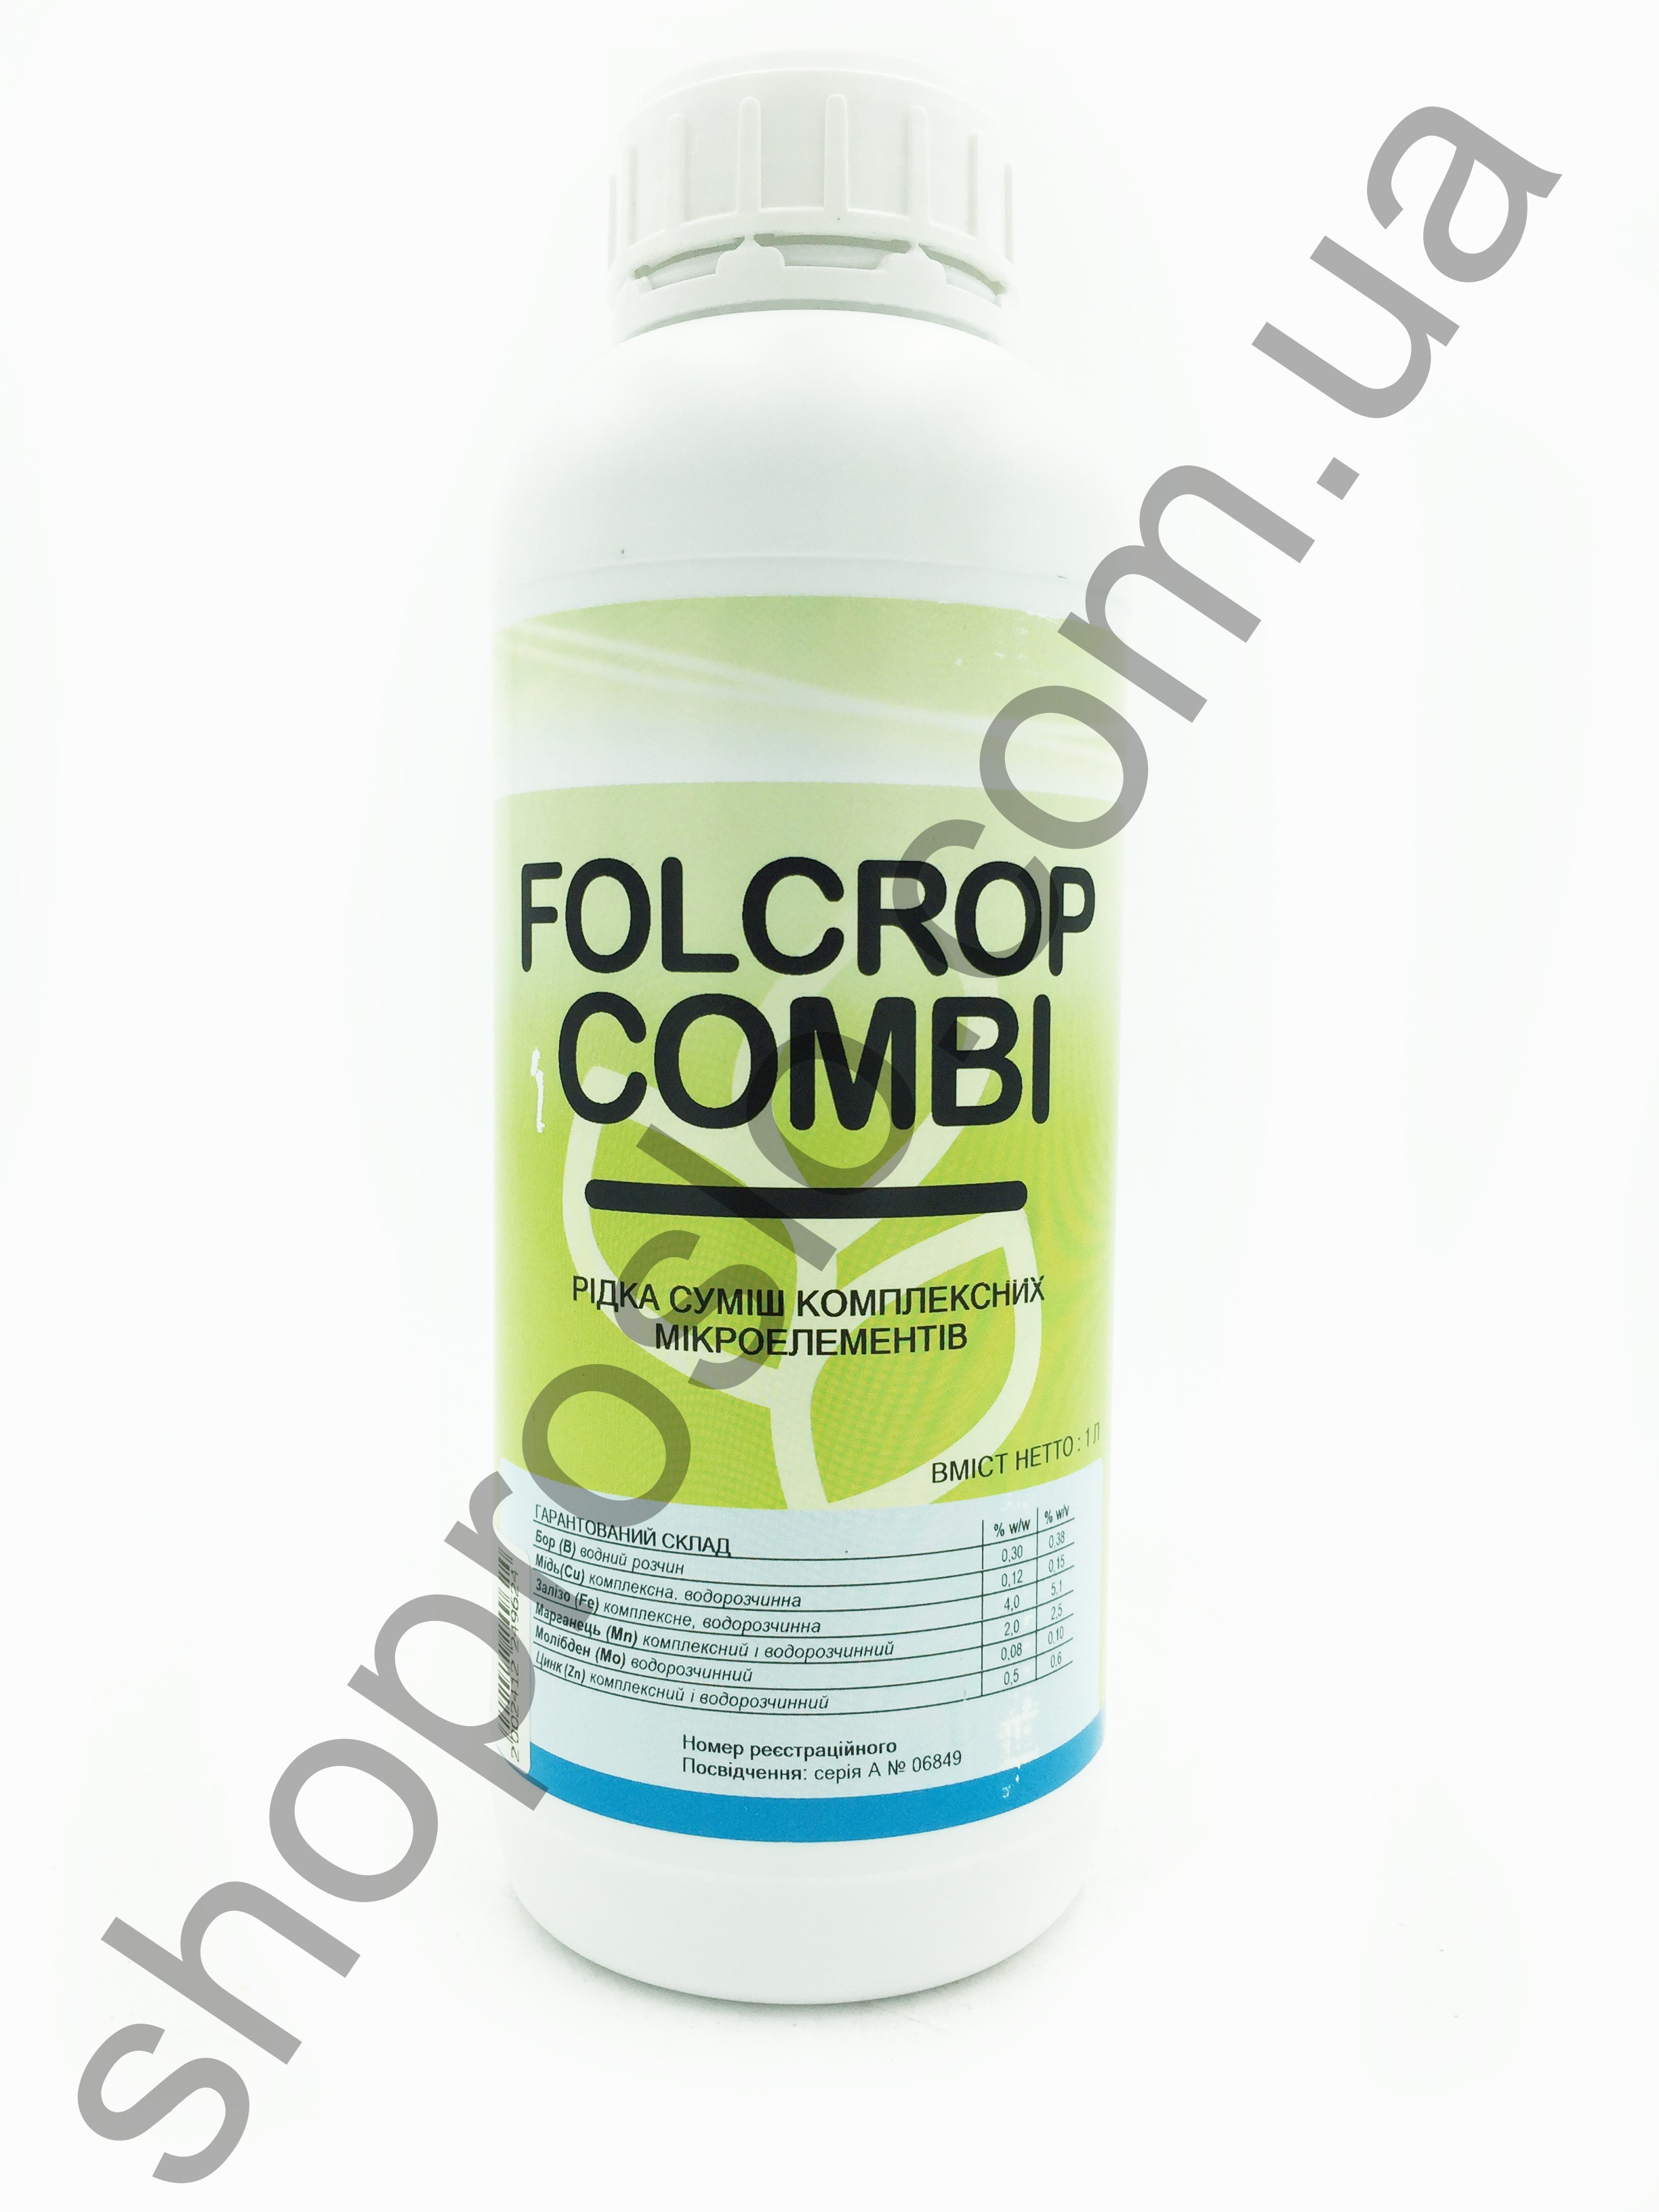 Фолькроп Комби (Folcrop Combi) , комплексное удобрение, "ForCrop" (Испания), 1 л